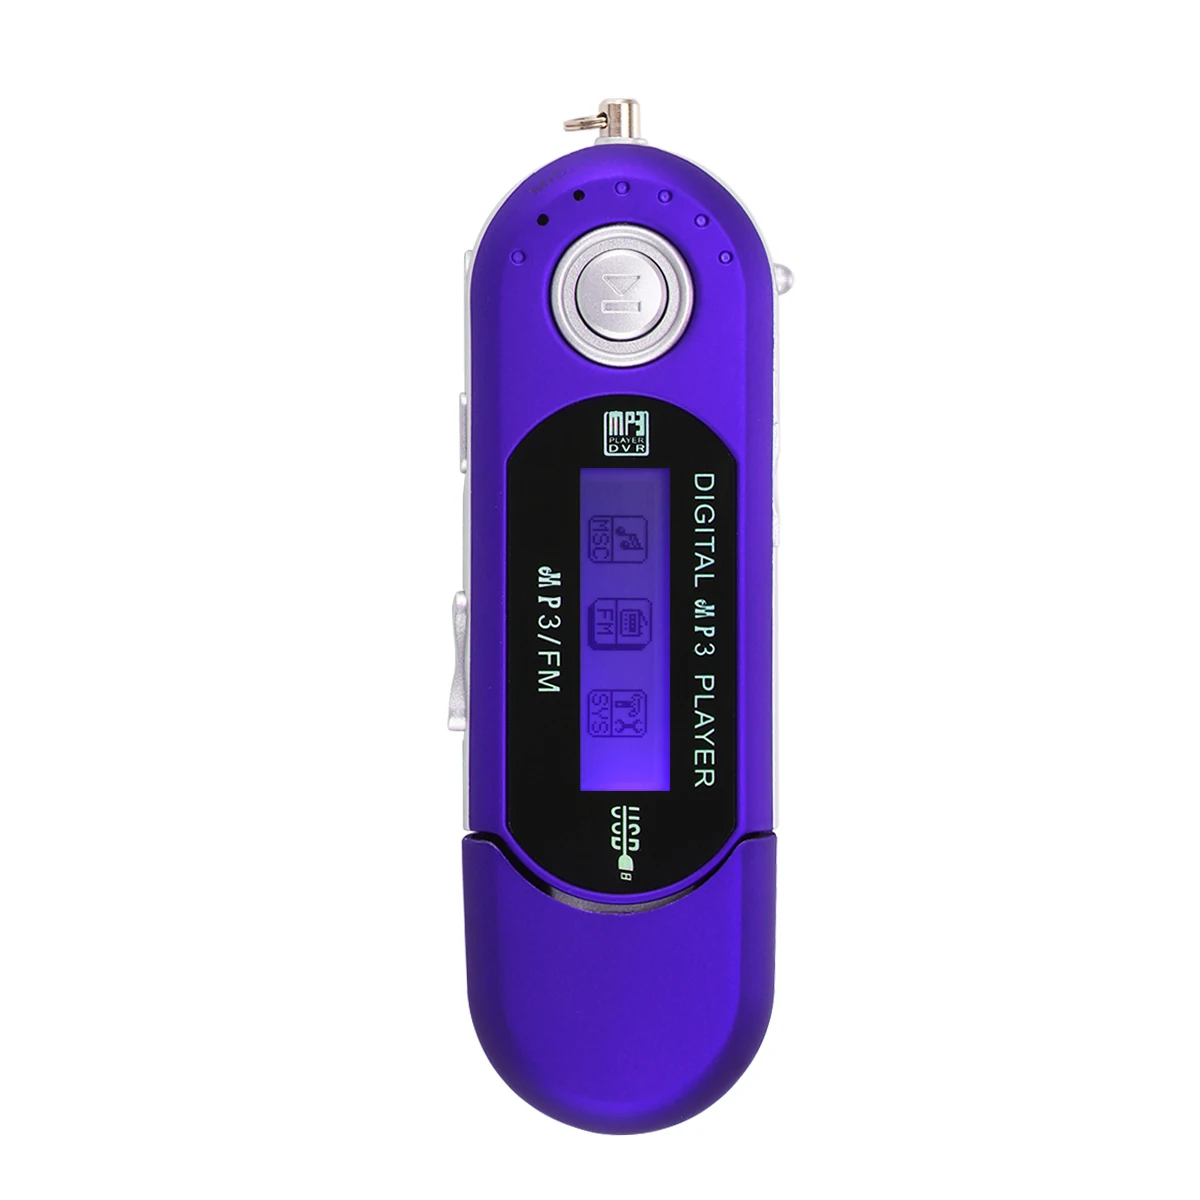 Портативный мини MP3 ЖК-дисплей цифровой USB палка Музыка MP3 плеер Поддержка TF Емкость макс 32 г FM радио Поддержка дропшиппинг